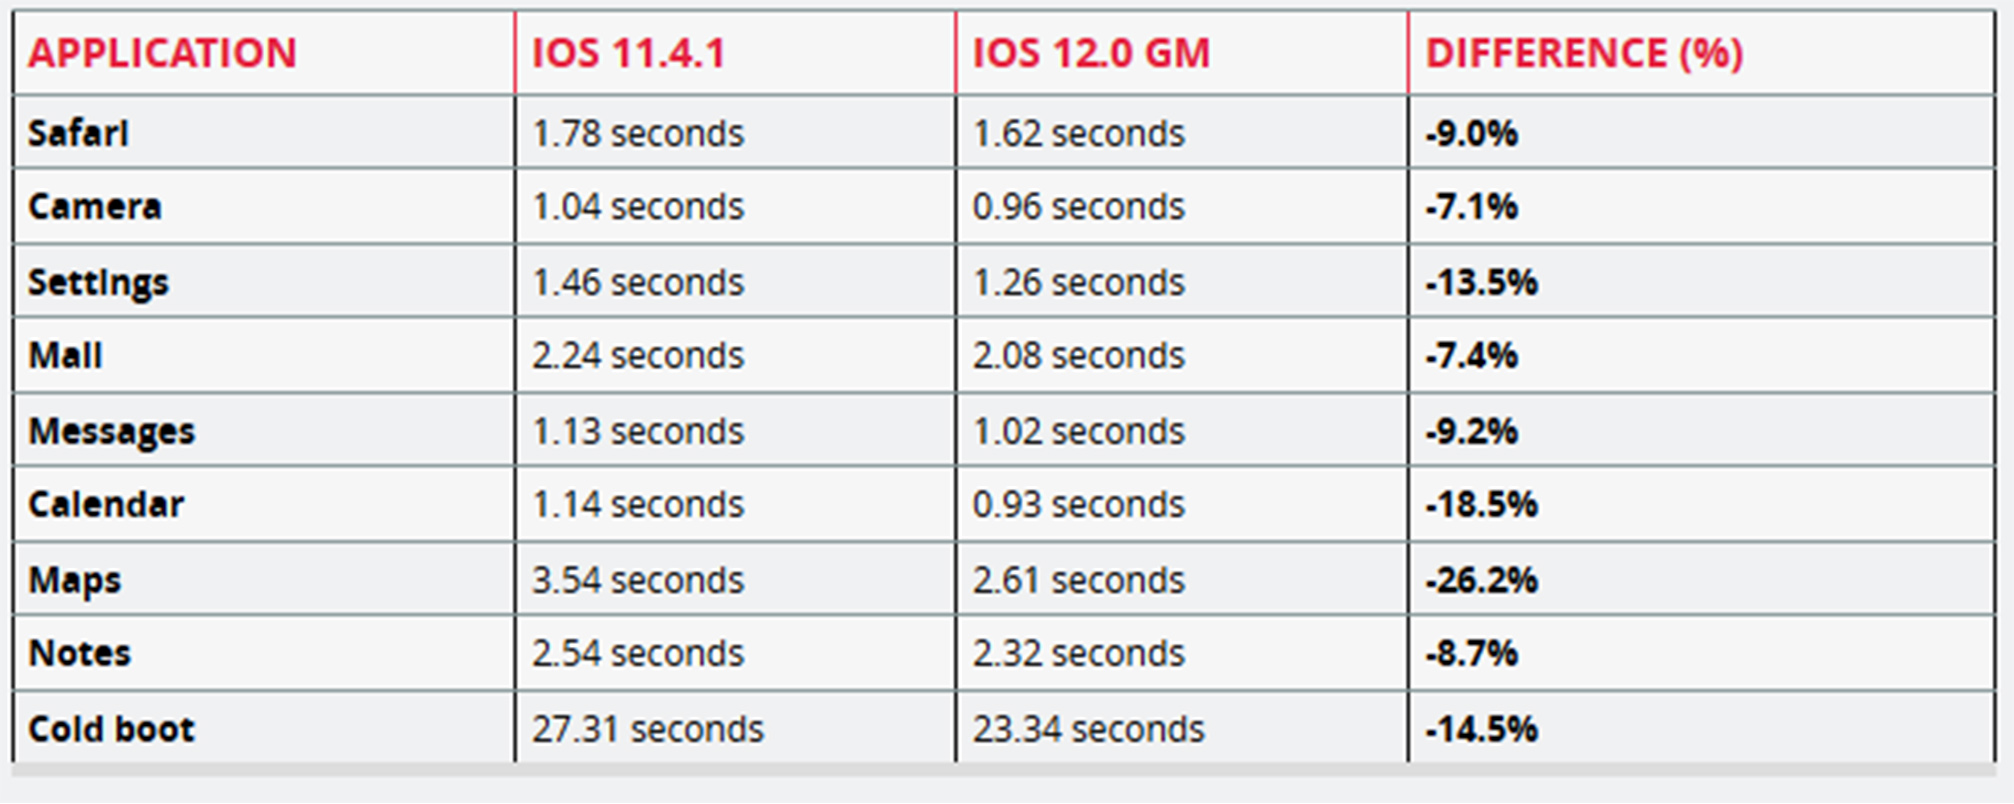 iPad Mini 2 test results